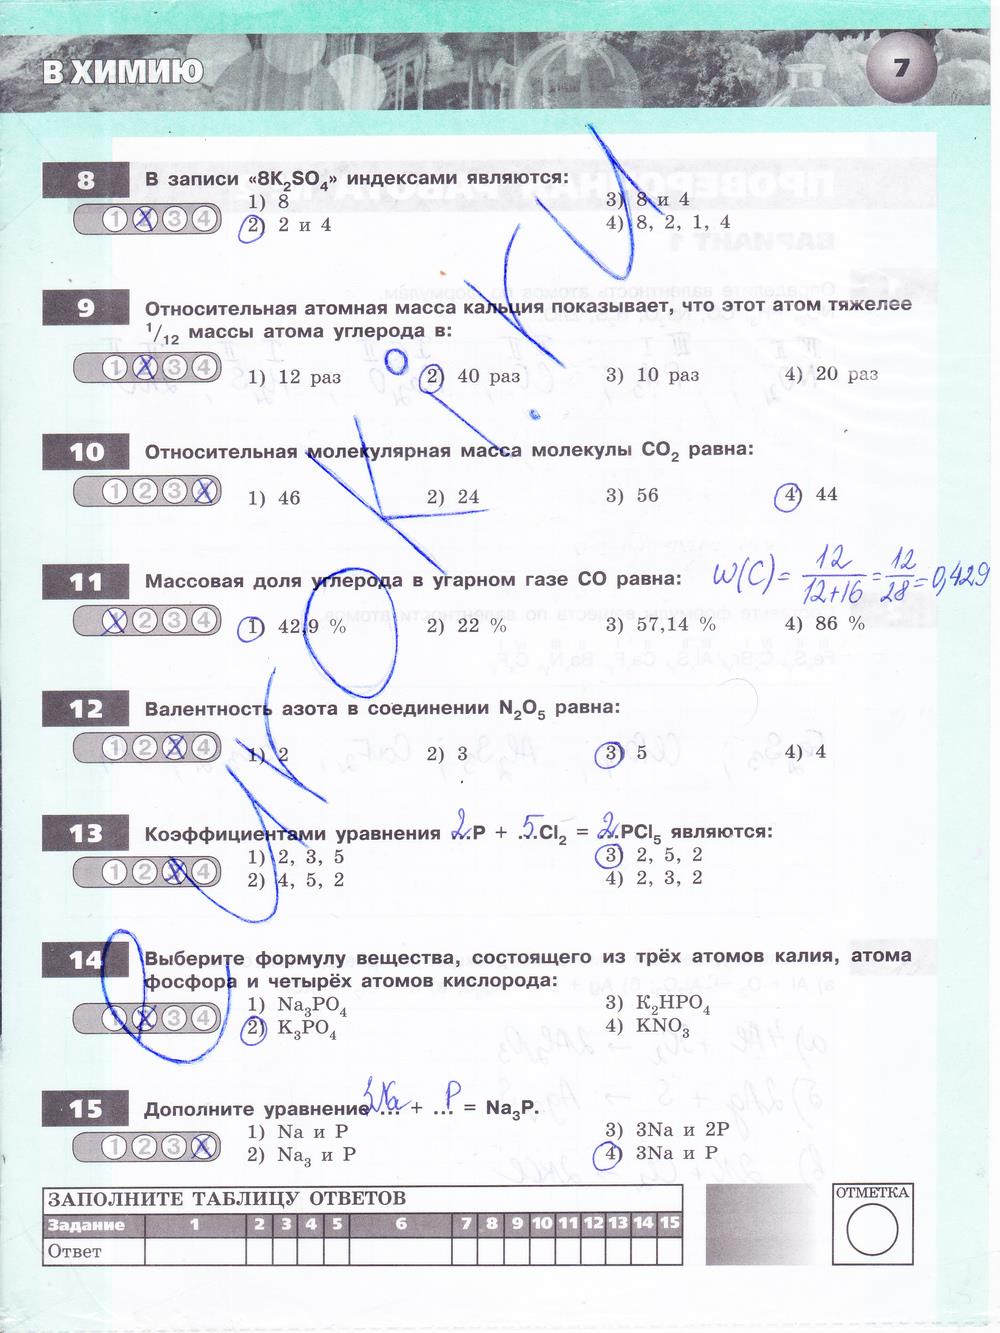 гдз 8 класс тетрадь-экзаменатор страница 7 химия Бобылева, Бирюлина